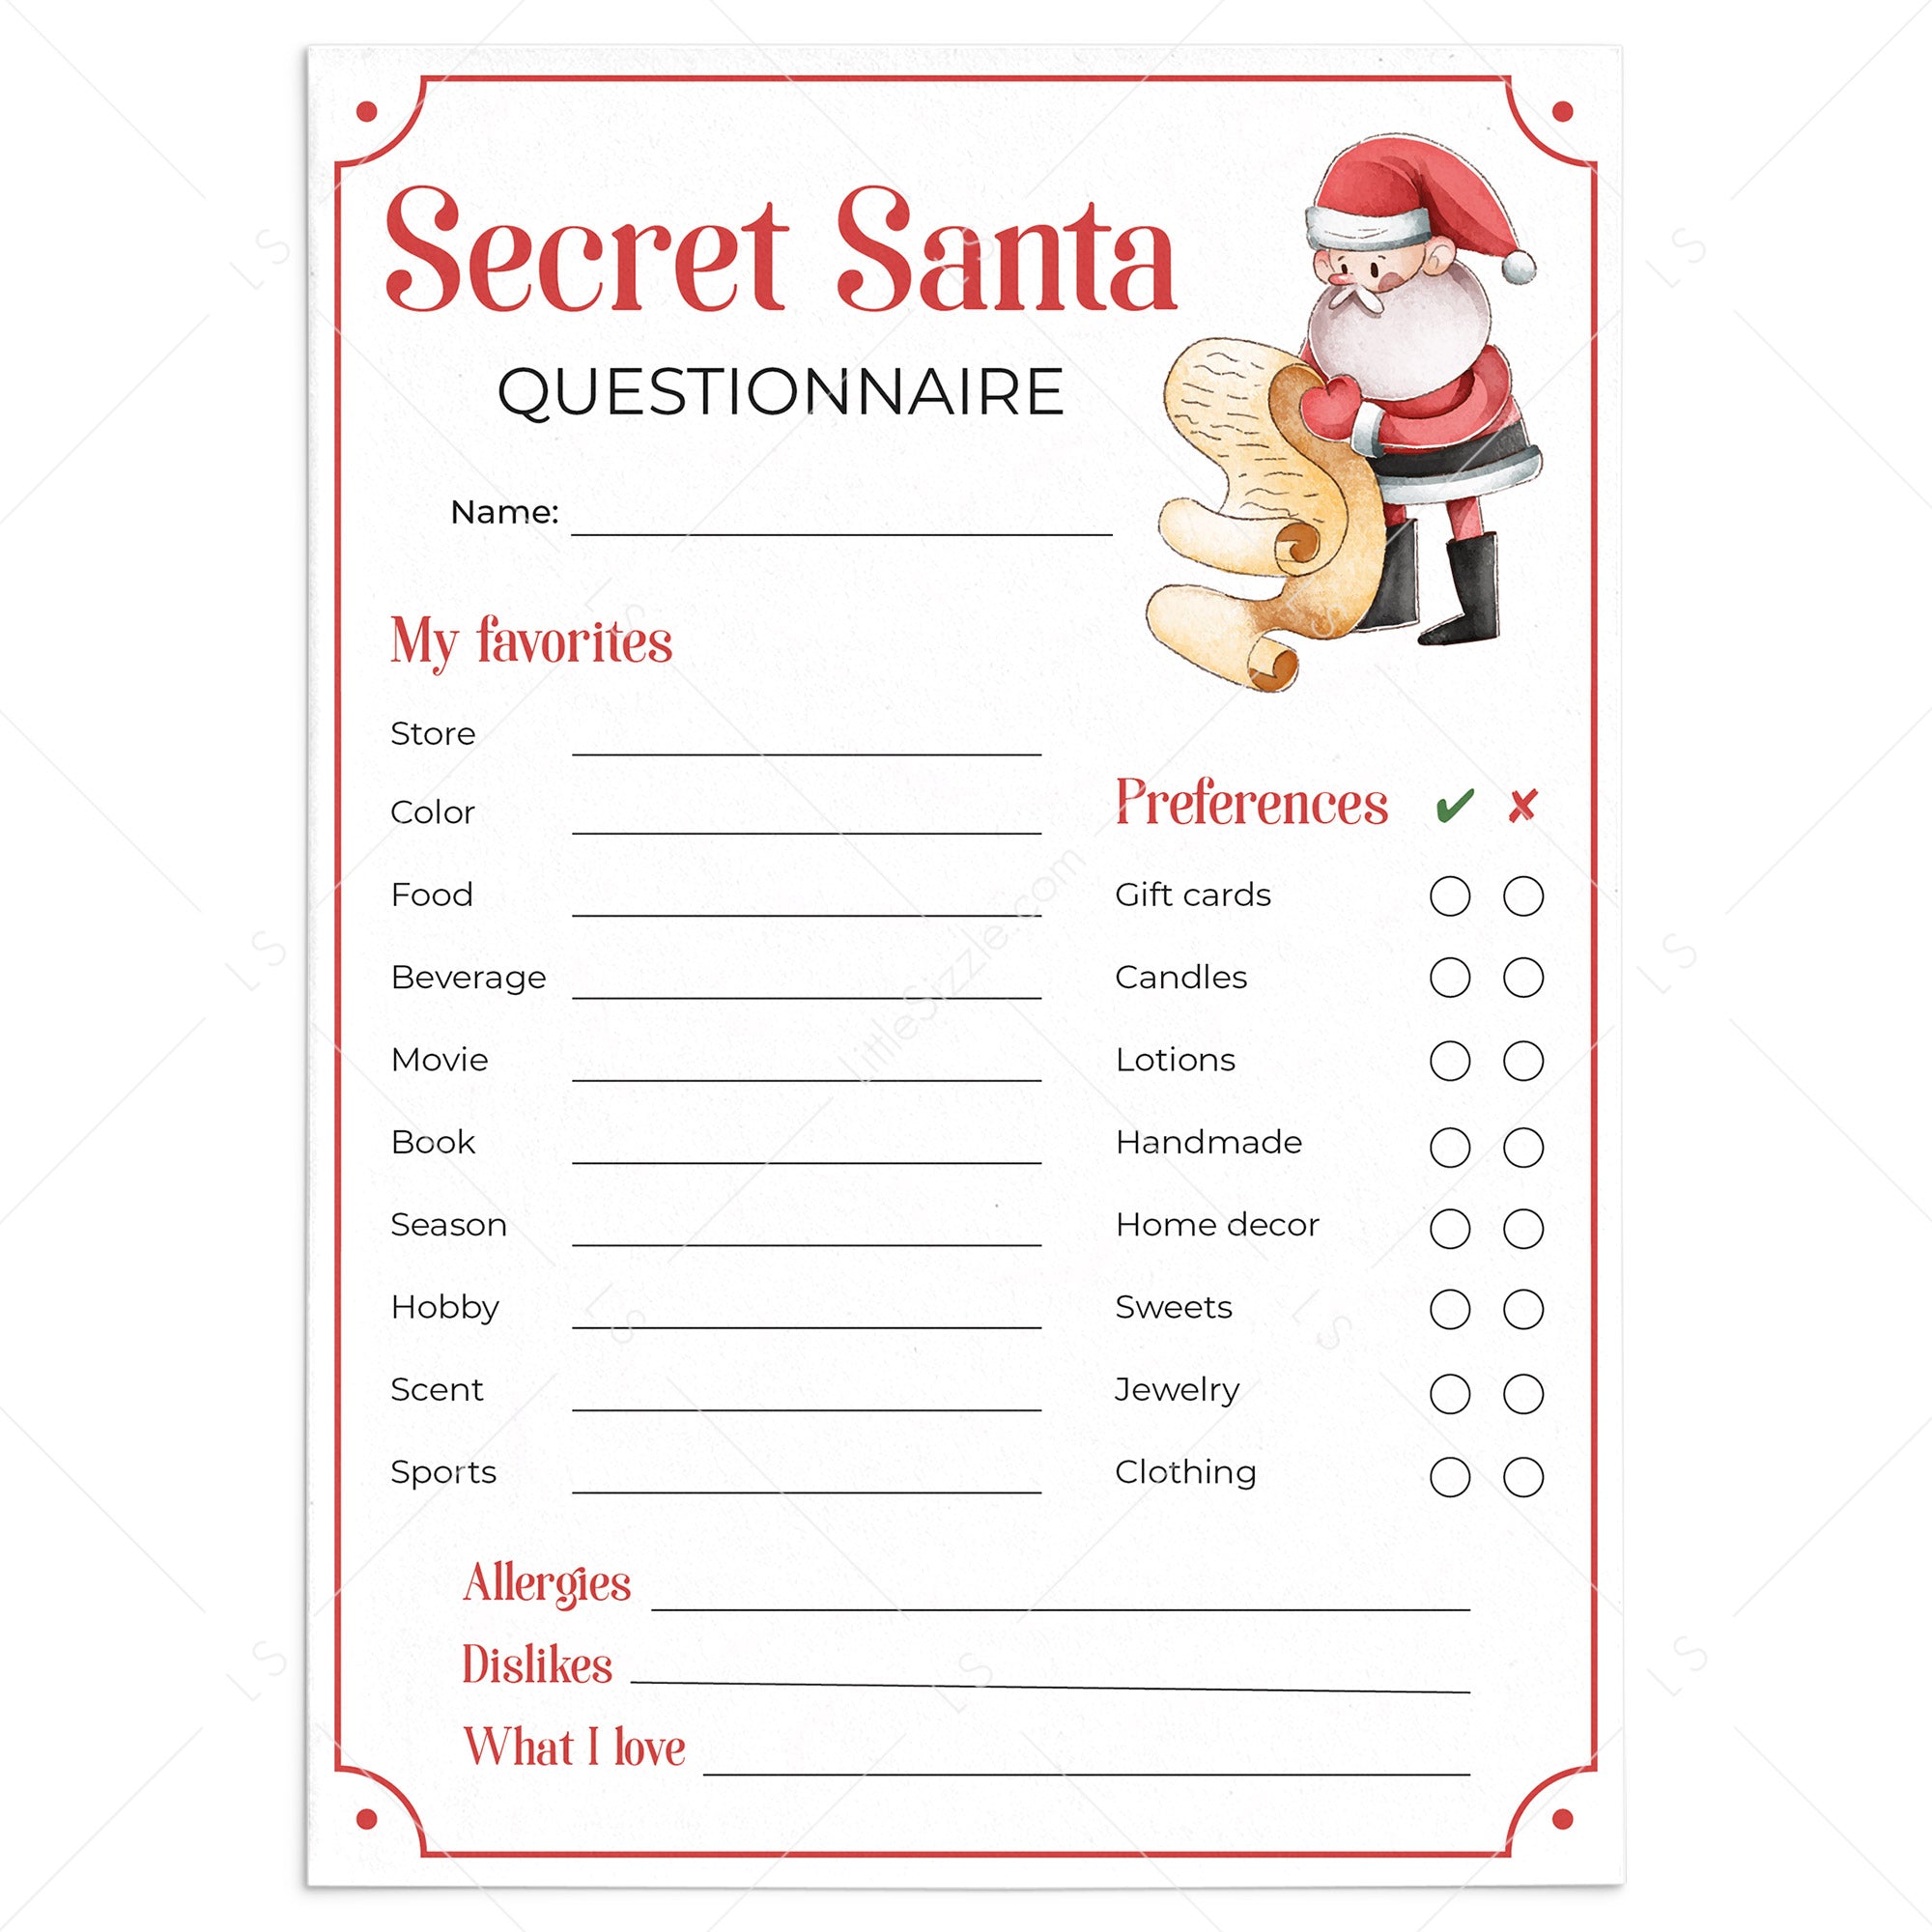 office-secret-santa-questionnaire-templates